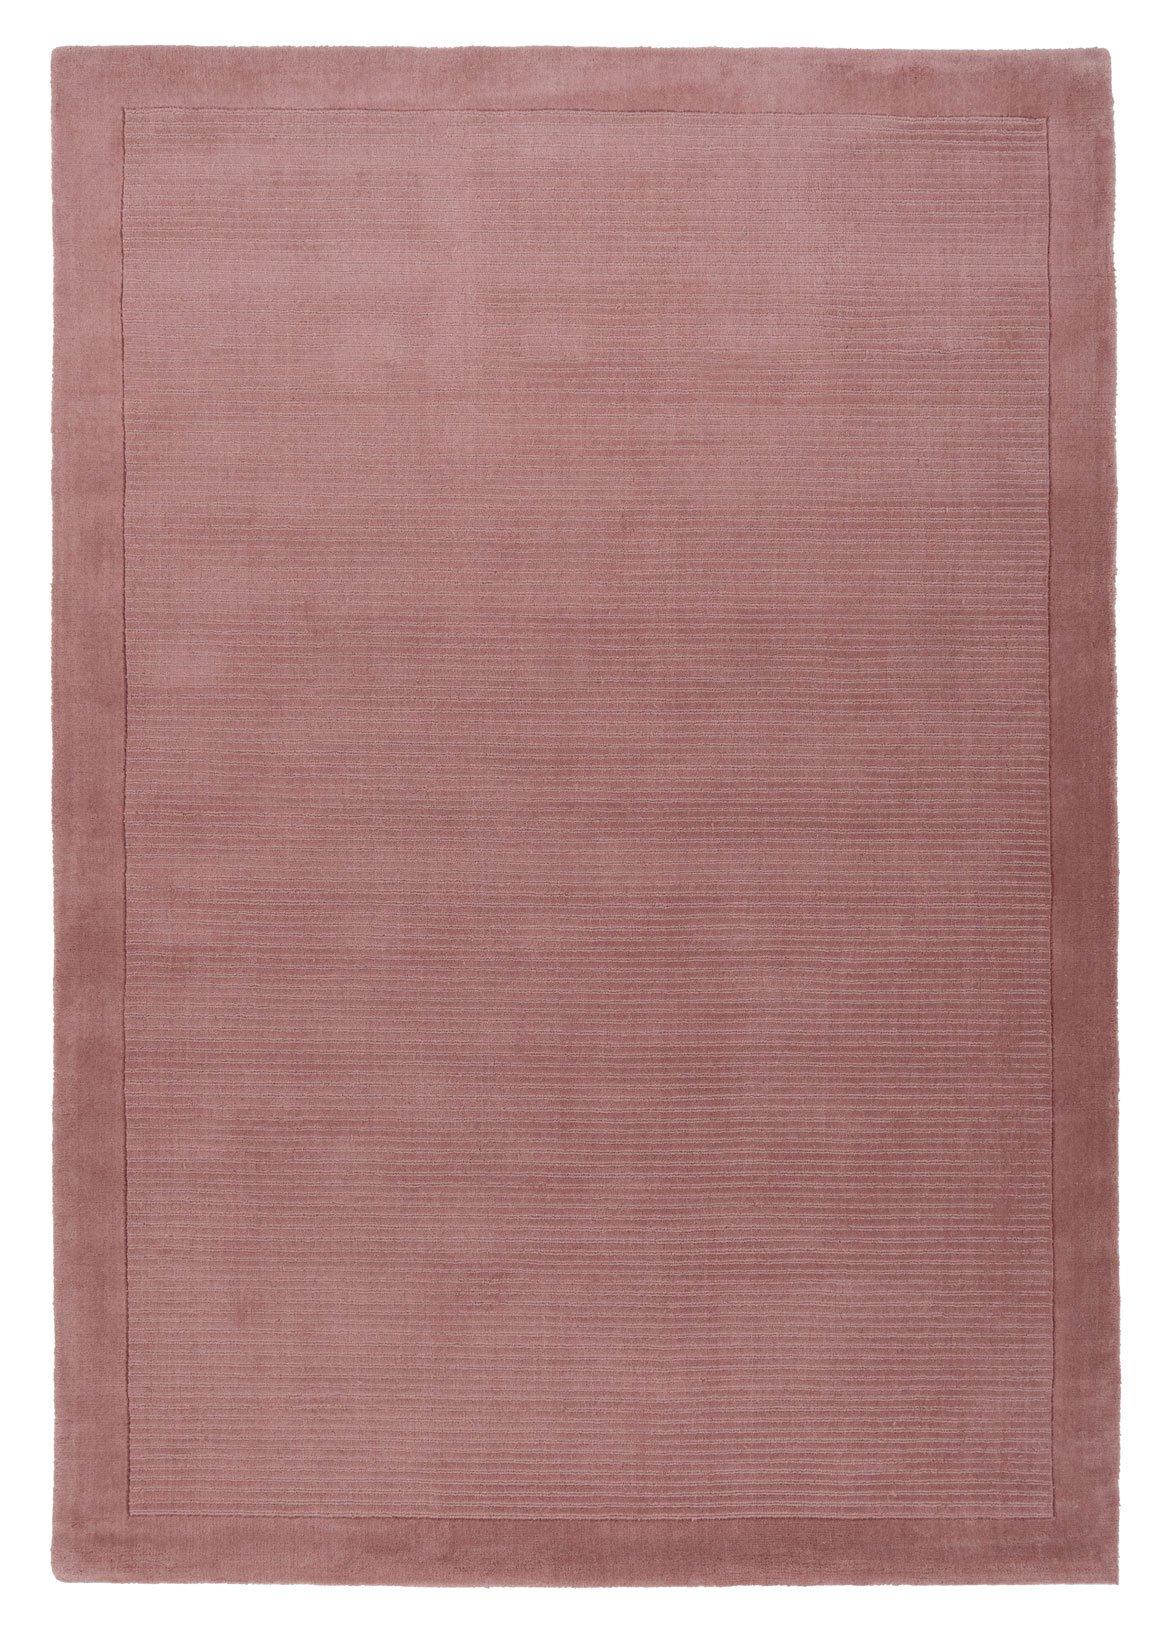 Natural Wool Plush Pile Blush Pink Area Rug